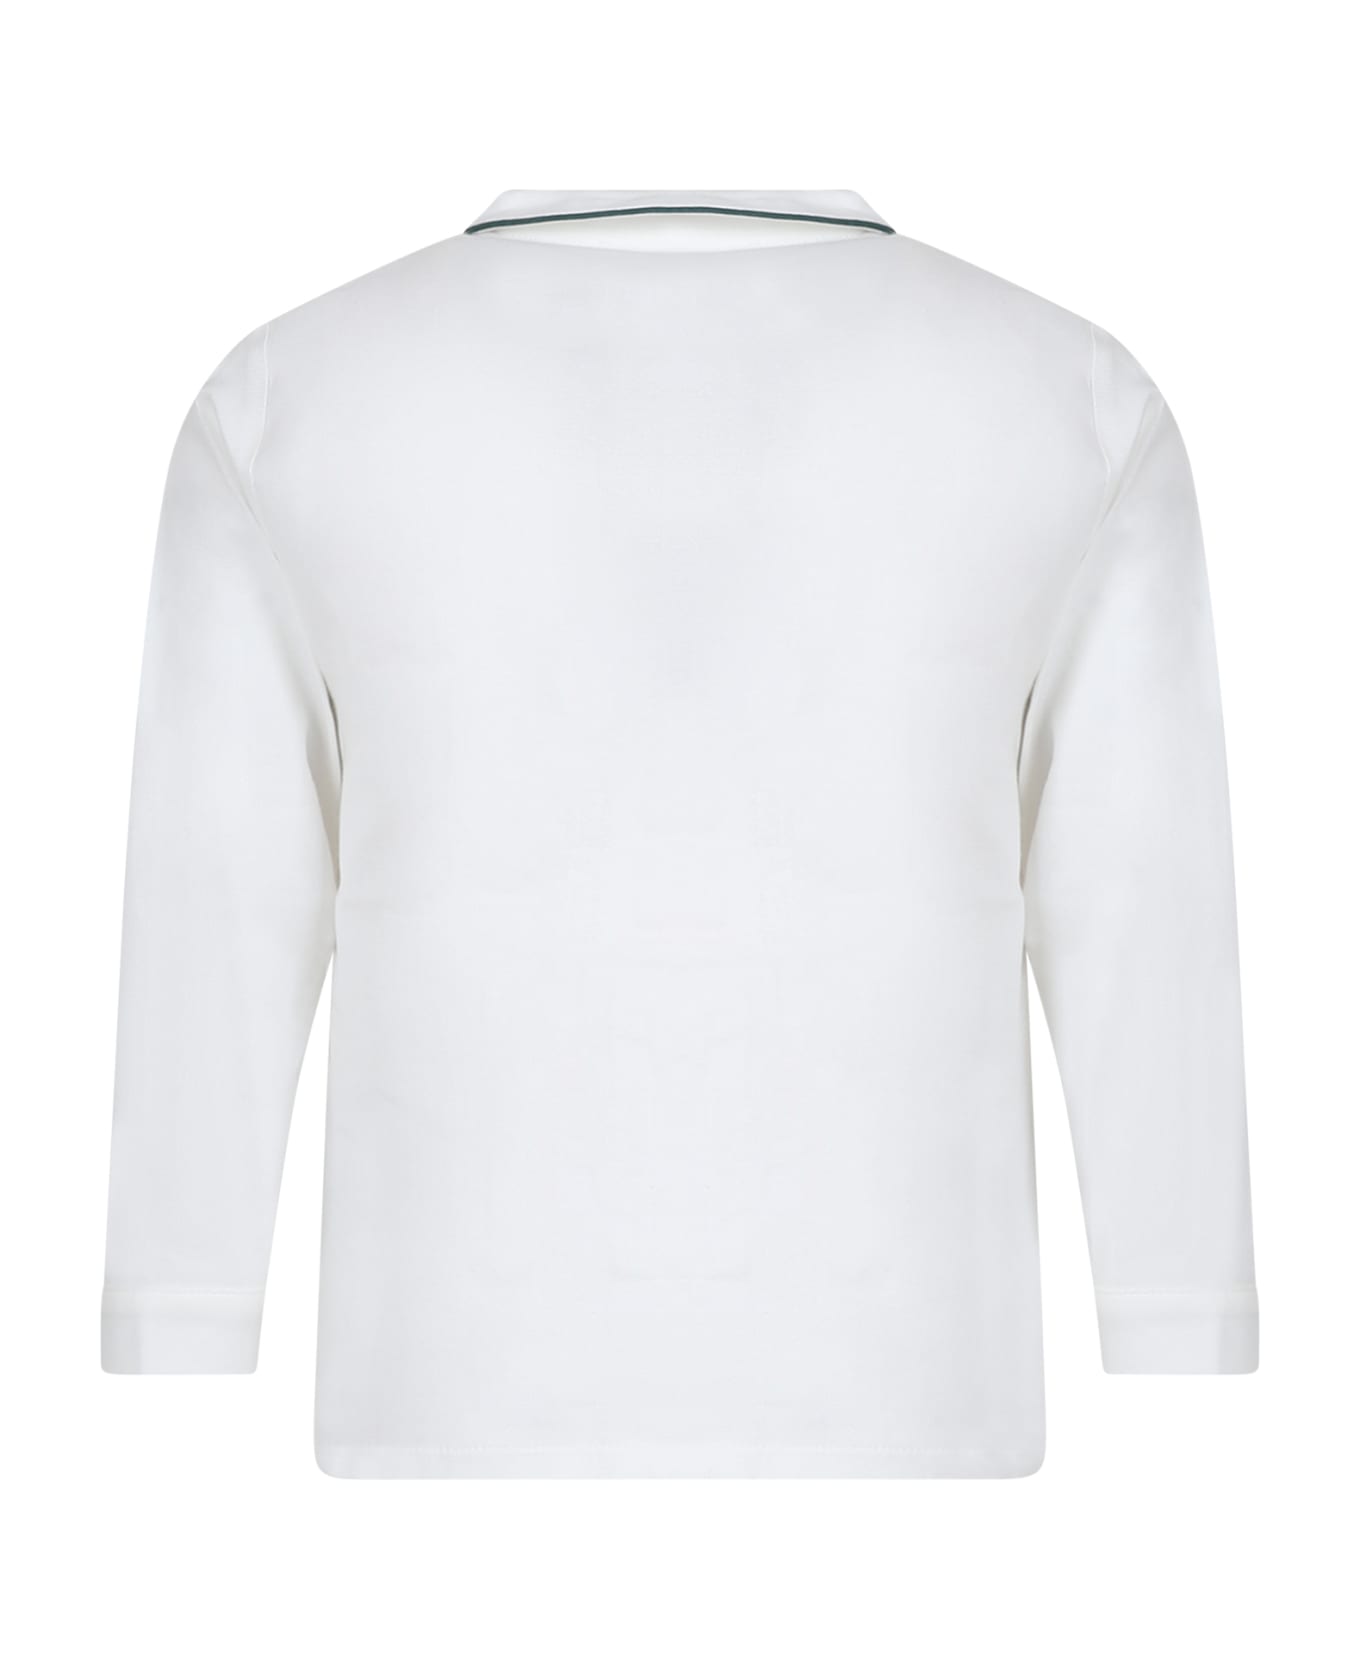 La stupenderia White Shirt For Boy - White